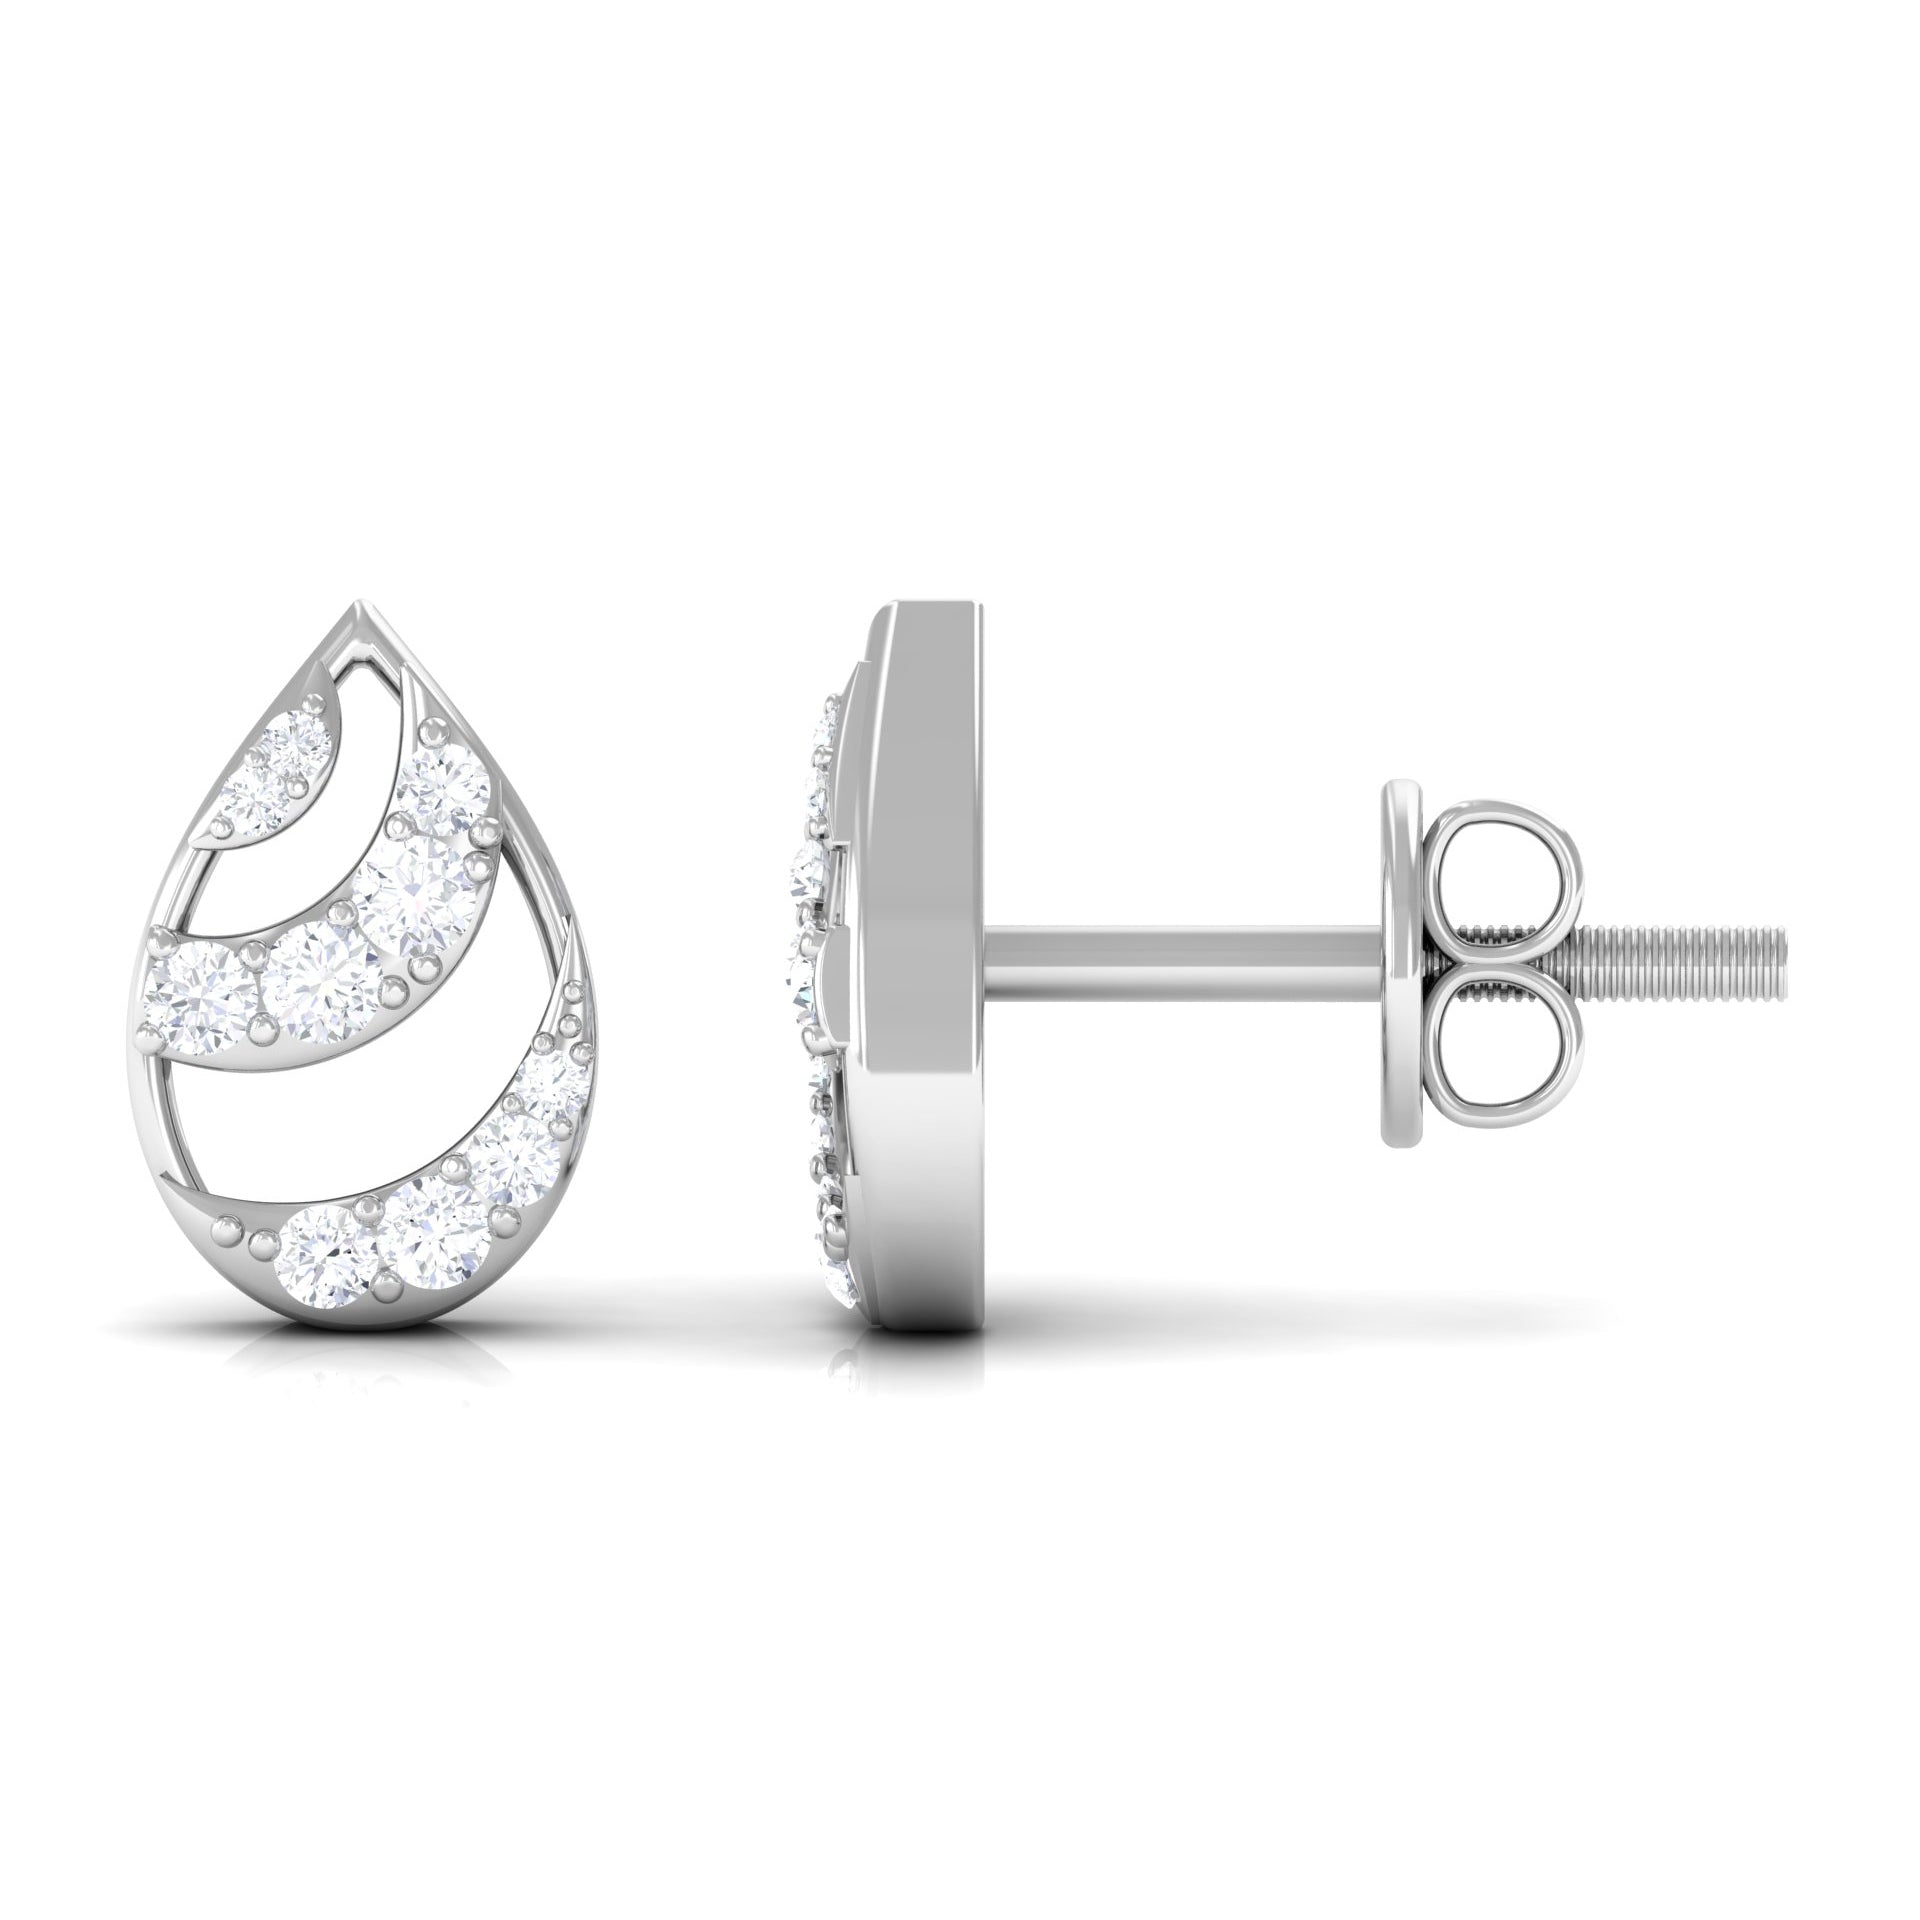 1/4 CT Minimal Zircon Teardrop Stud Earrings in Gold Zircon - ( AAAA ) - Quality - Rosec Jewels